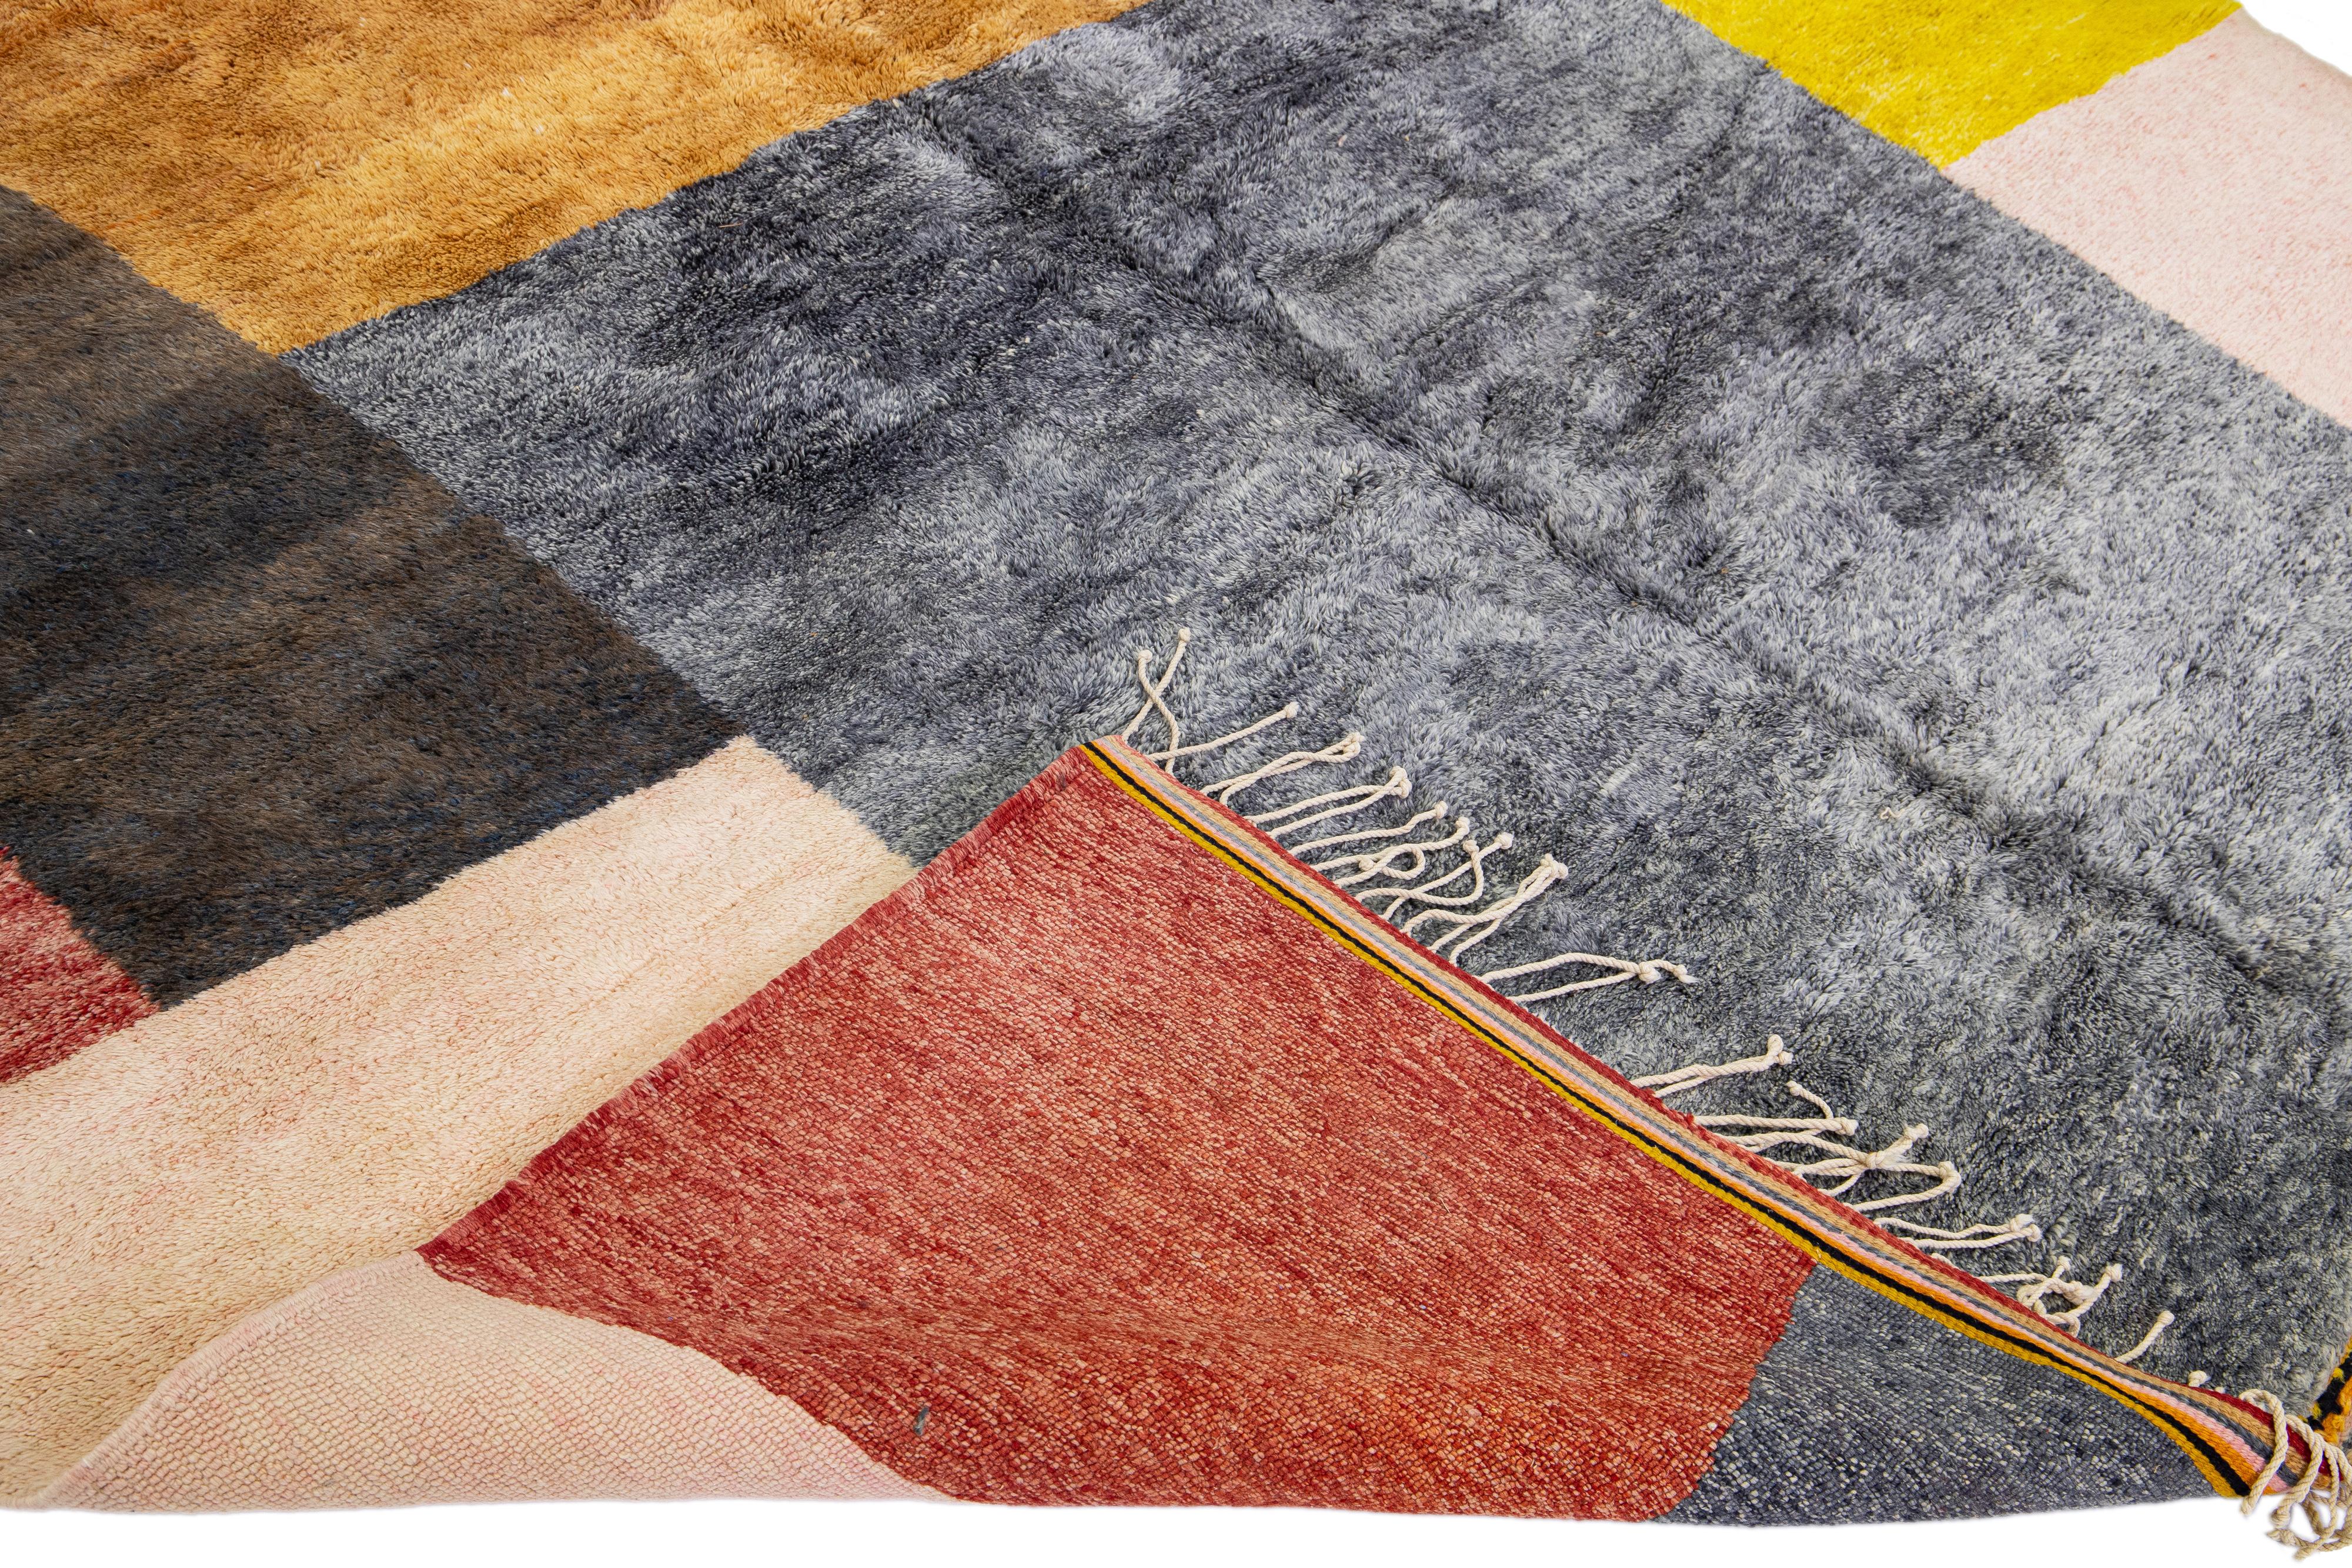 Magnifique tapis marocain en laine noué à la main avec un champ multicolore. Ce tapis moderne présente un magnifique motif géométrique abstrait et des franges beiges.

Ce tapis mesure : 10'8